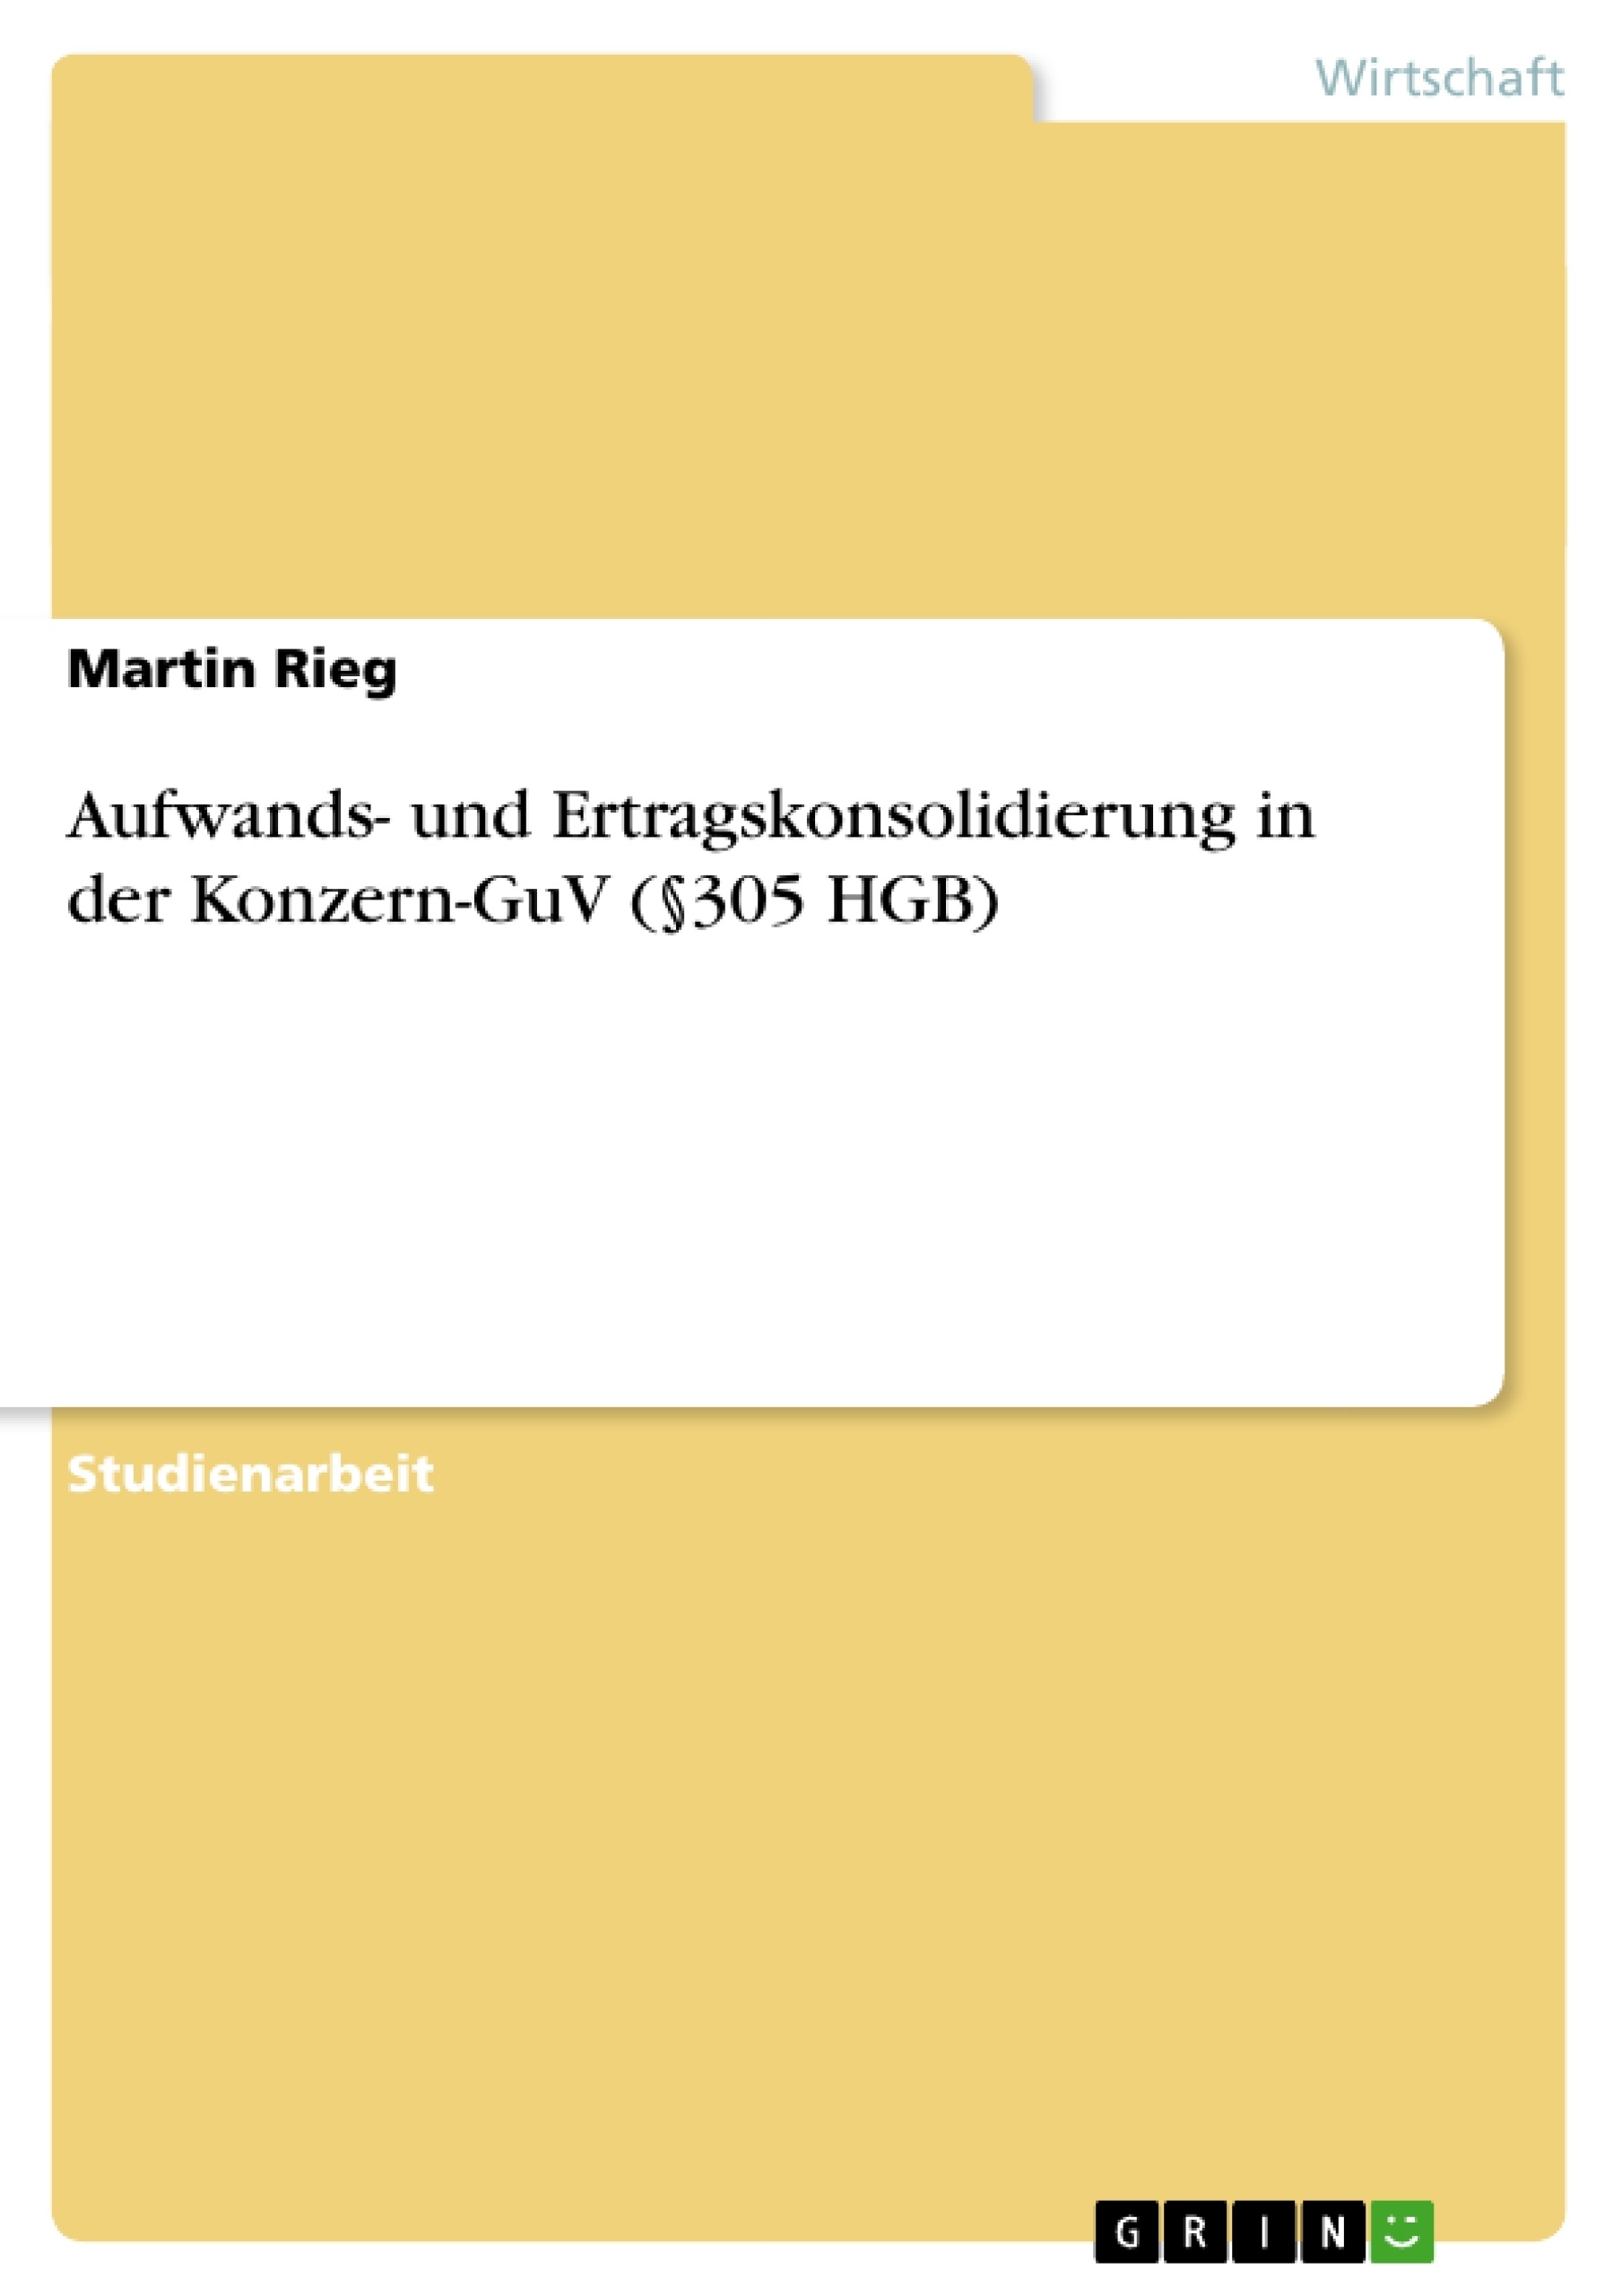 Titre: Aufwands- und Ertragskonsolidierung in der Konzern-GuV (§305 HGB)